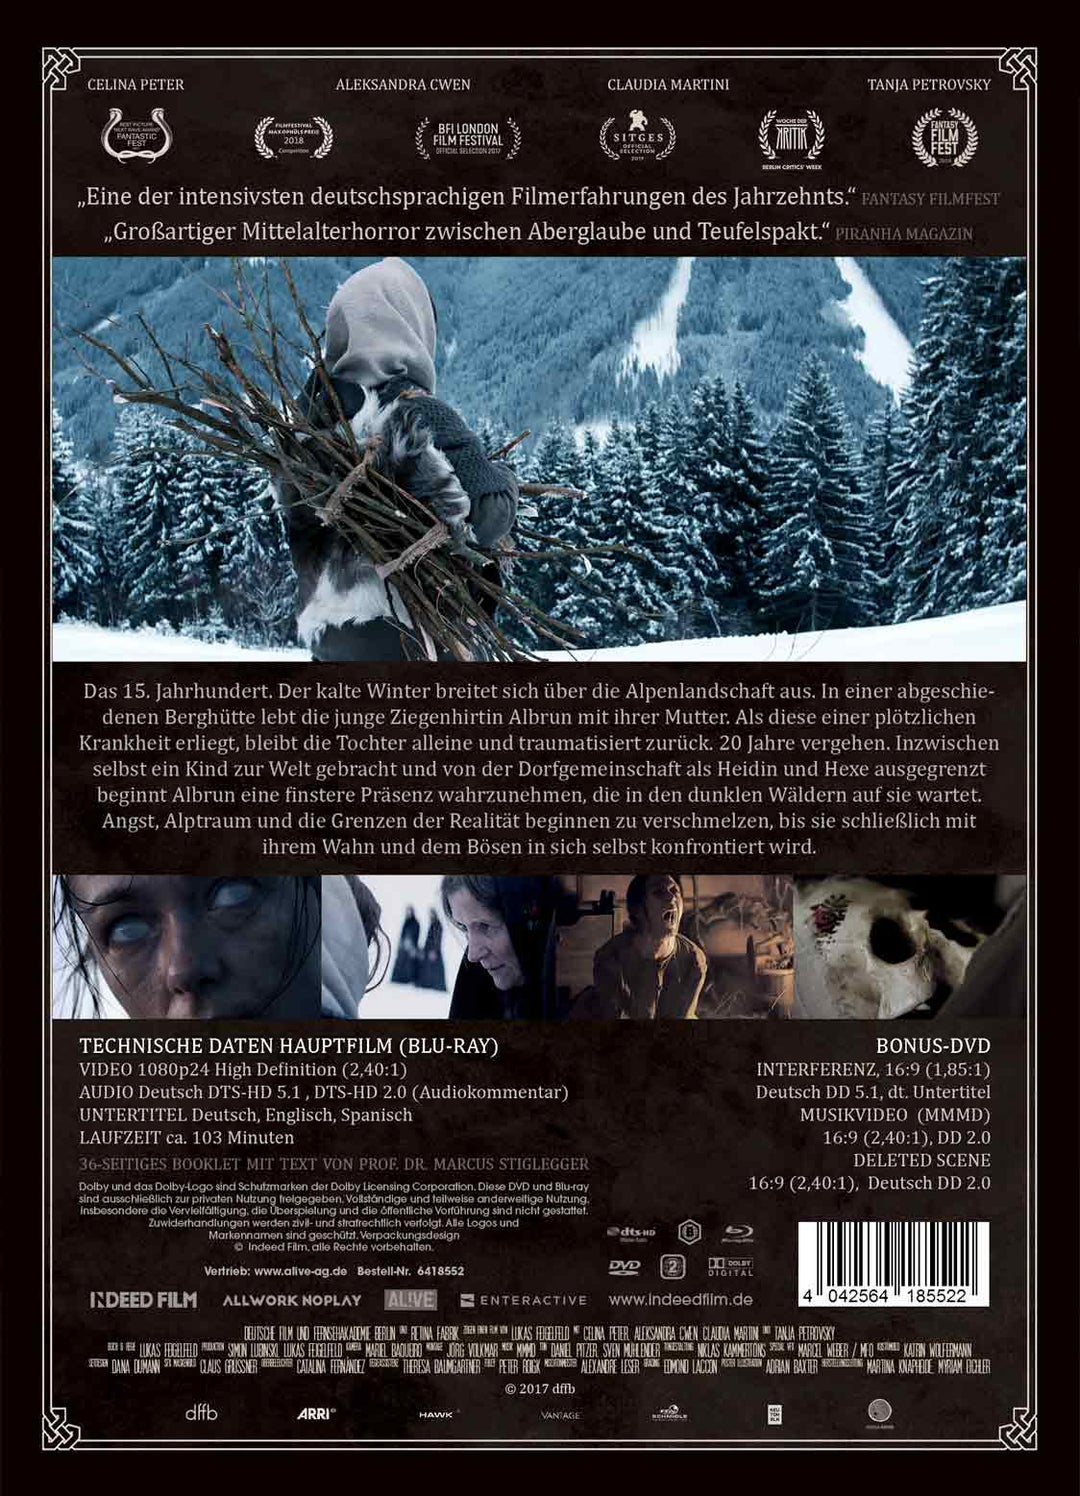 Hagazussa - Der Hexenfluch (Ltd. 2-Disc BD+DVD + Schuber)